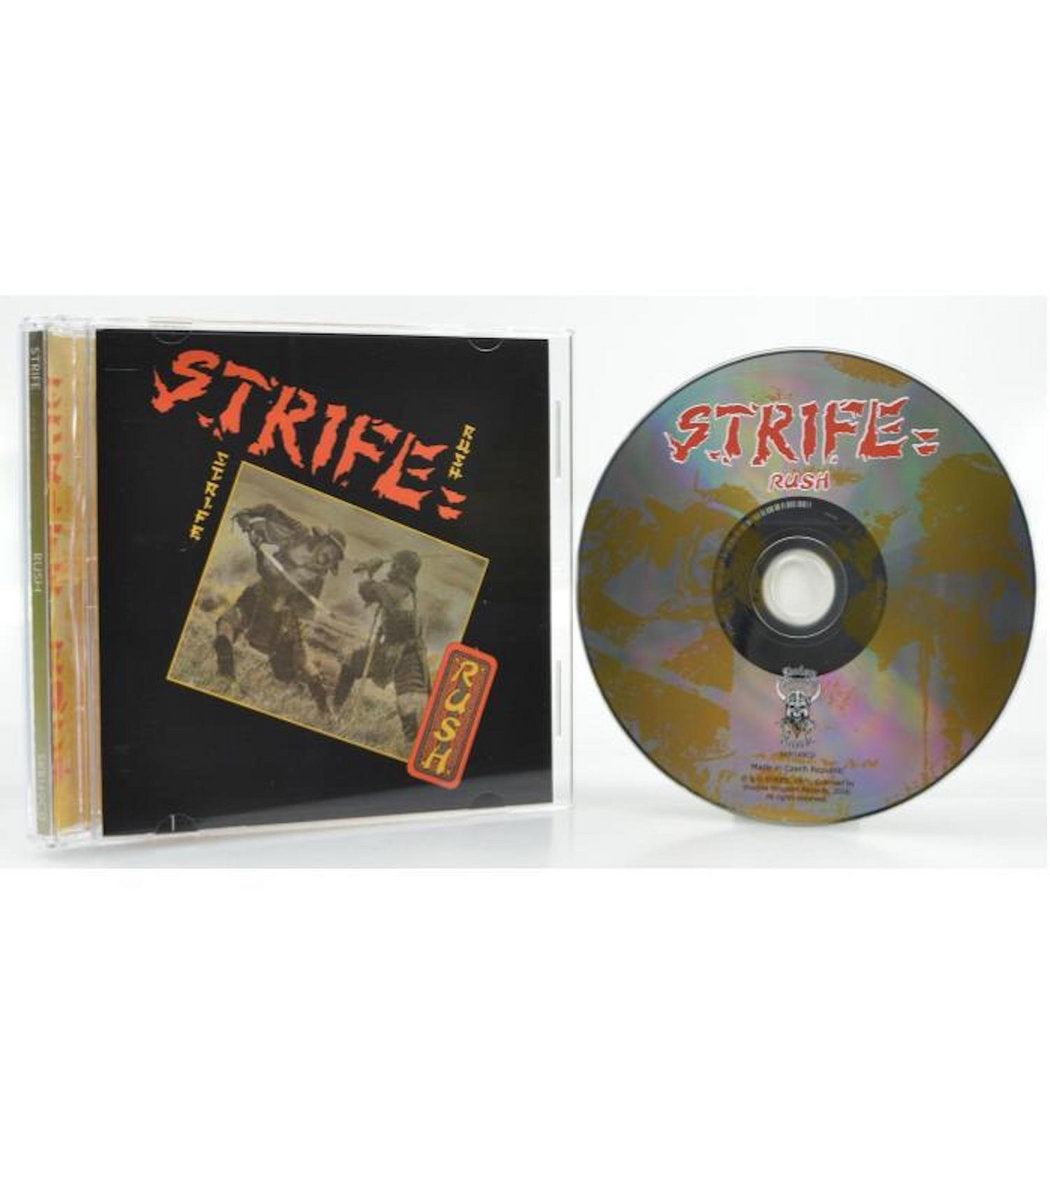 STRIFE - Rush (CD)